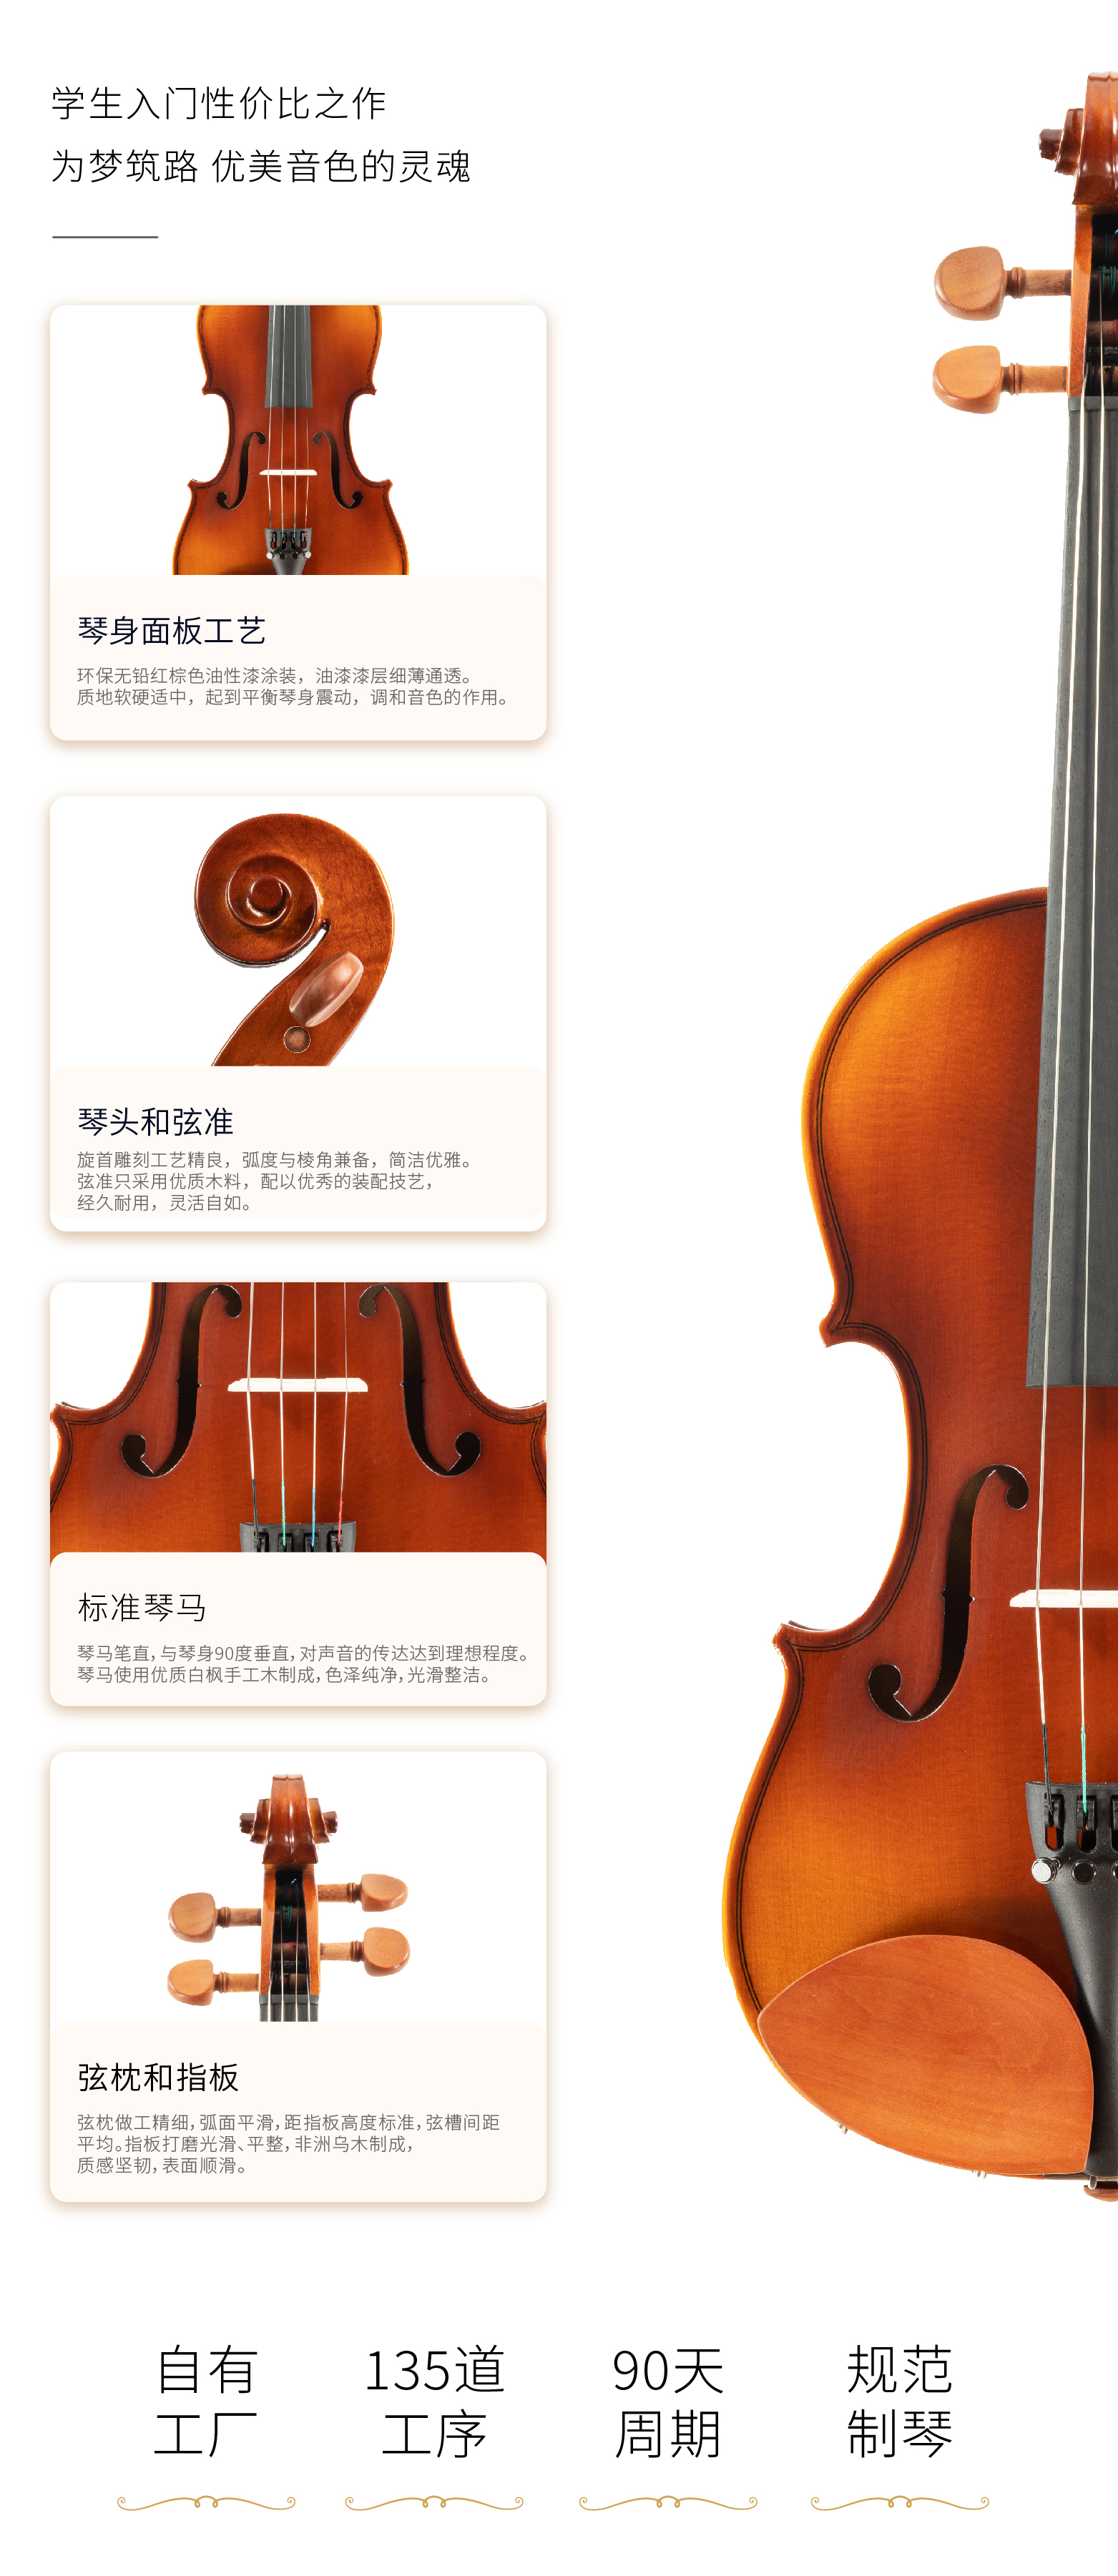 熙珑乐器专营店-详情-v1-2_SV200小提琴_PC-副本-2_07.jpg